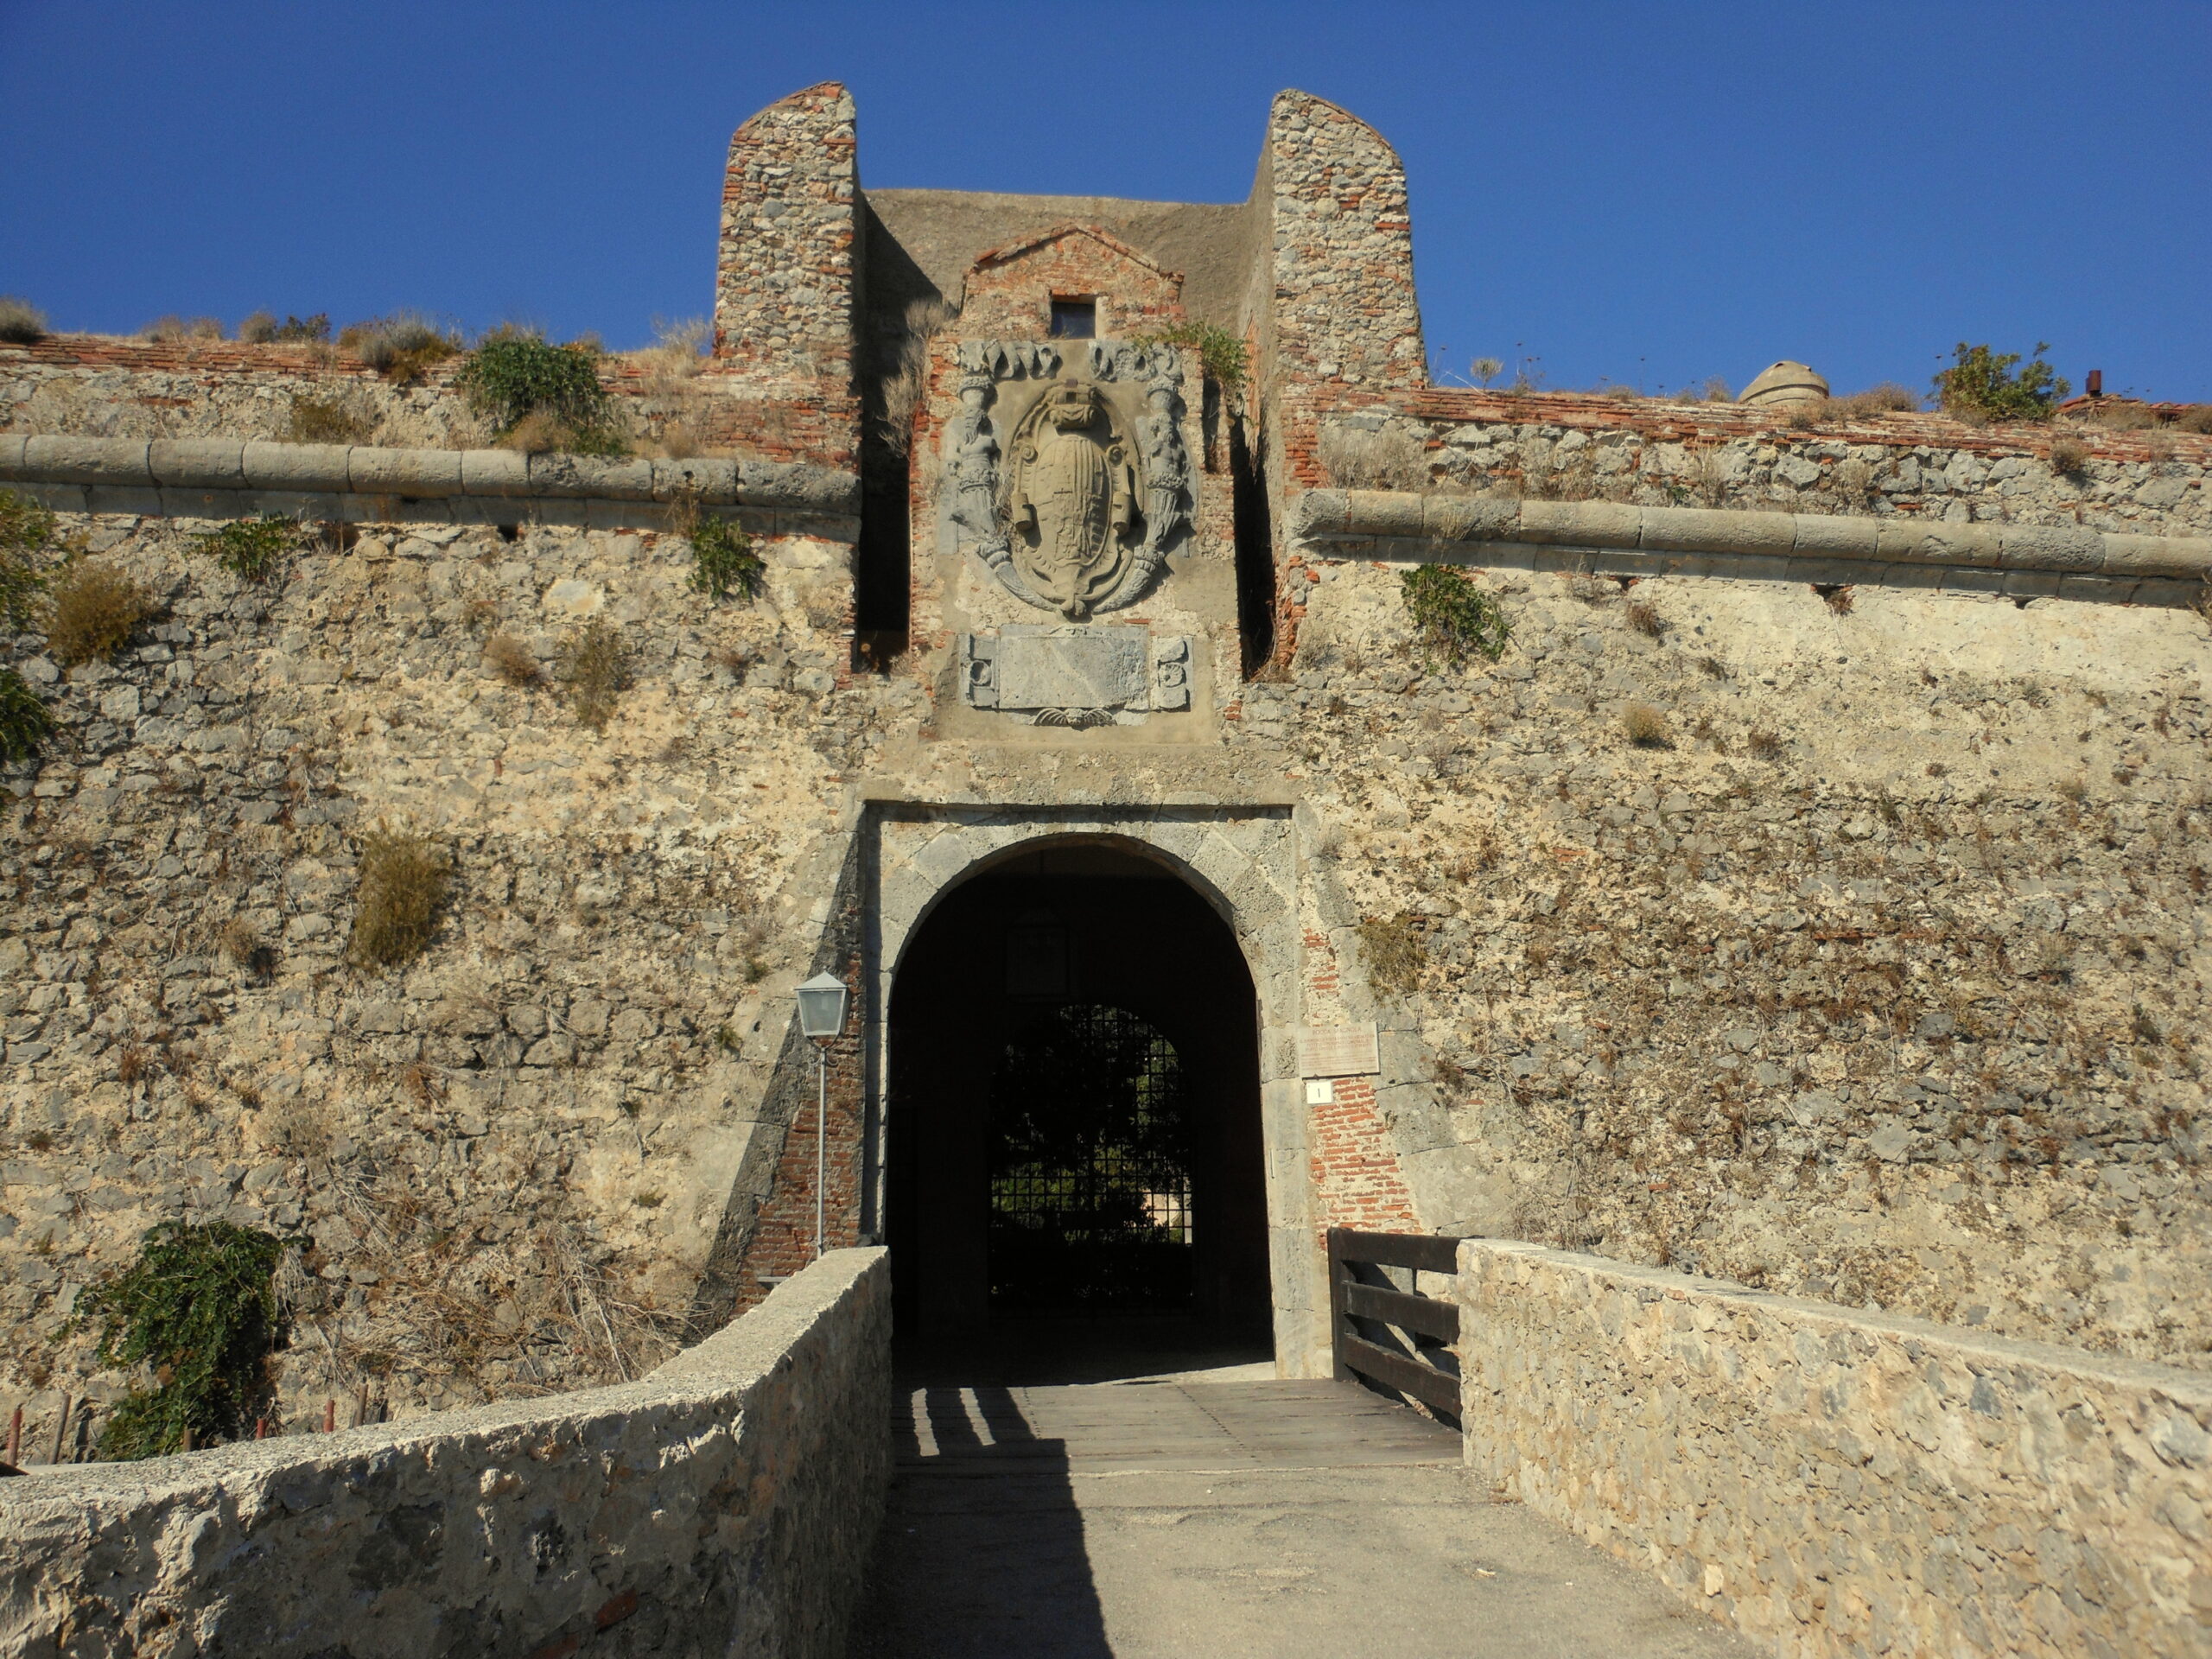 Affitto appartamento all’interno della fascinosa fortezza La Rocca. Porto Ercole